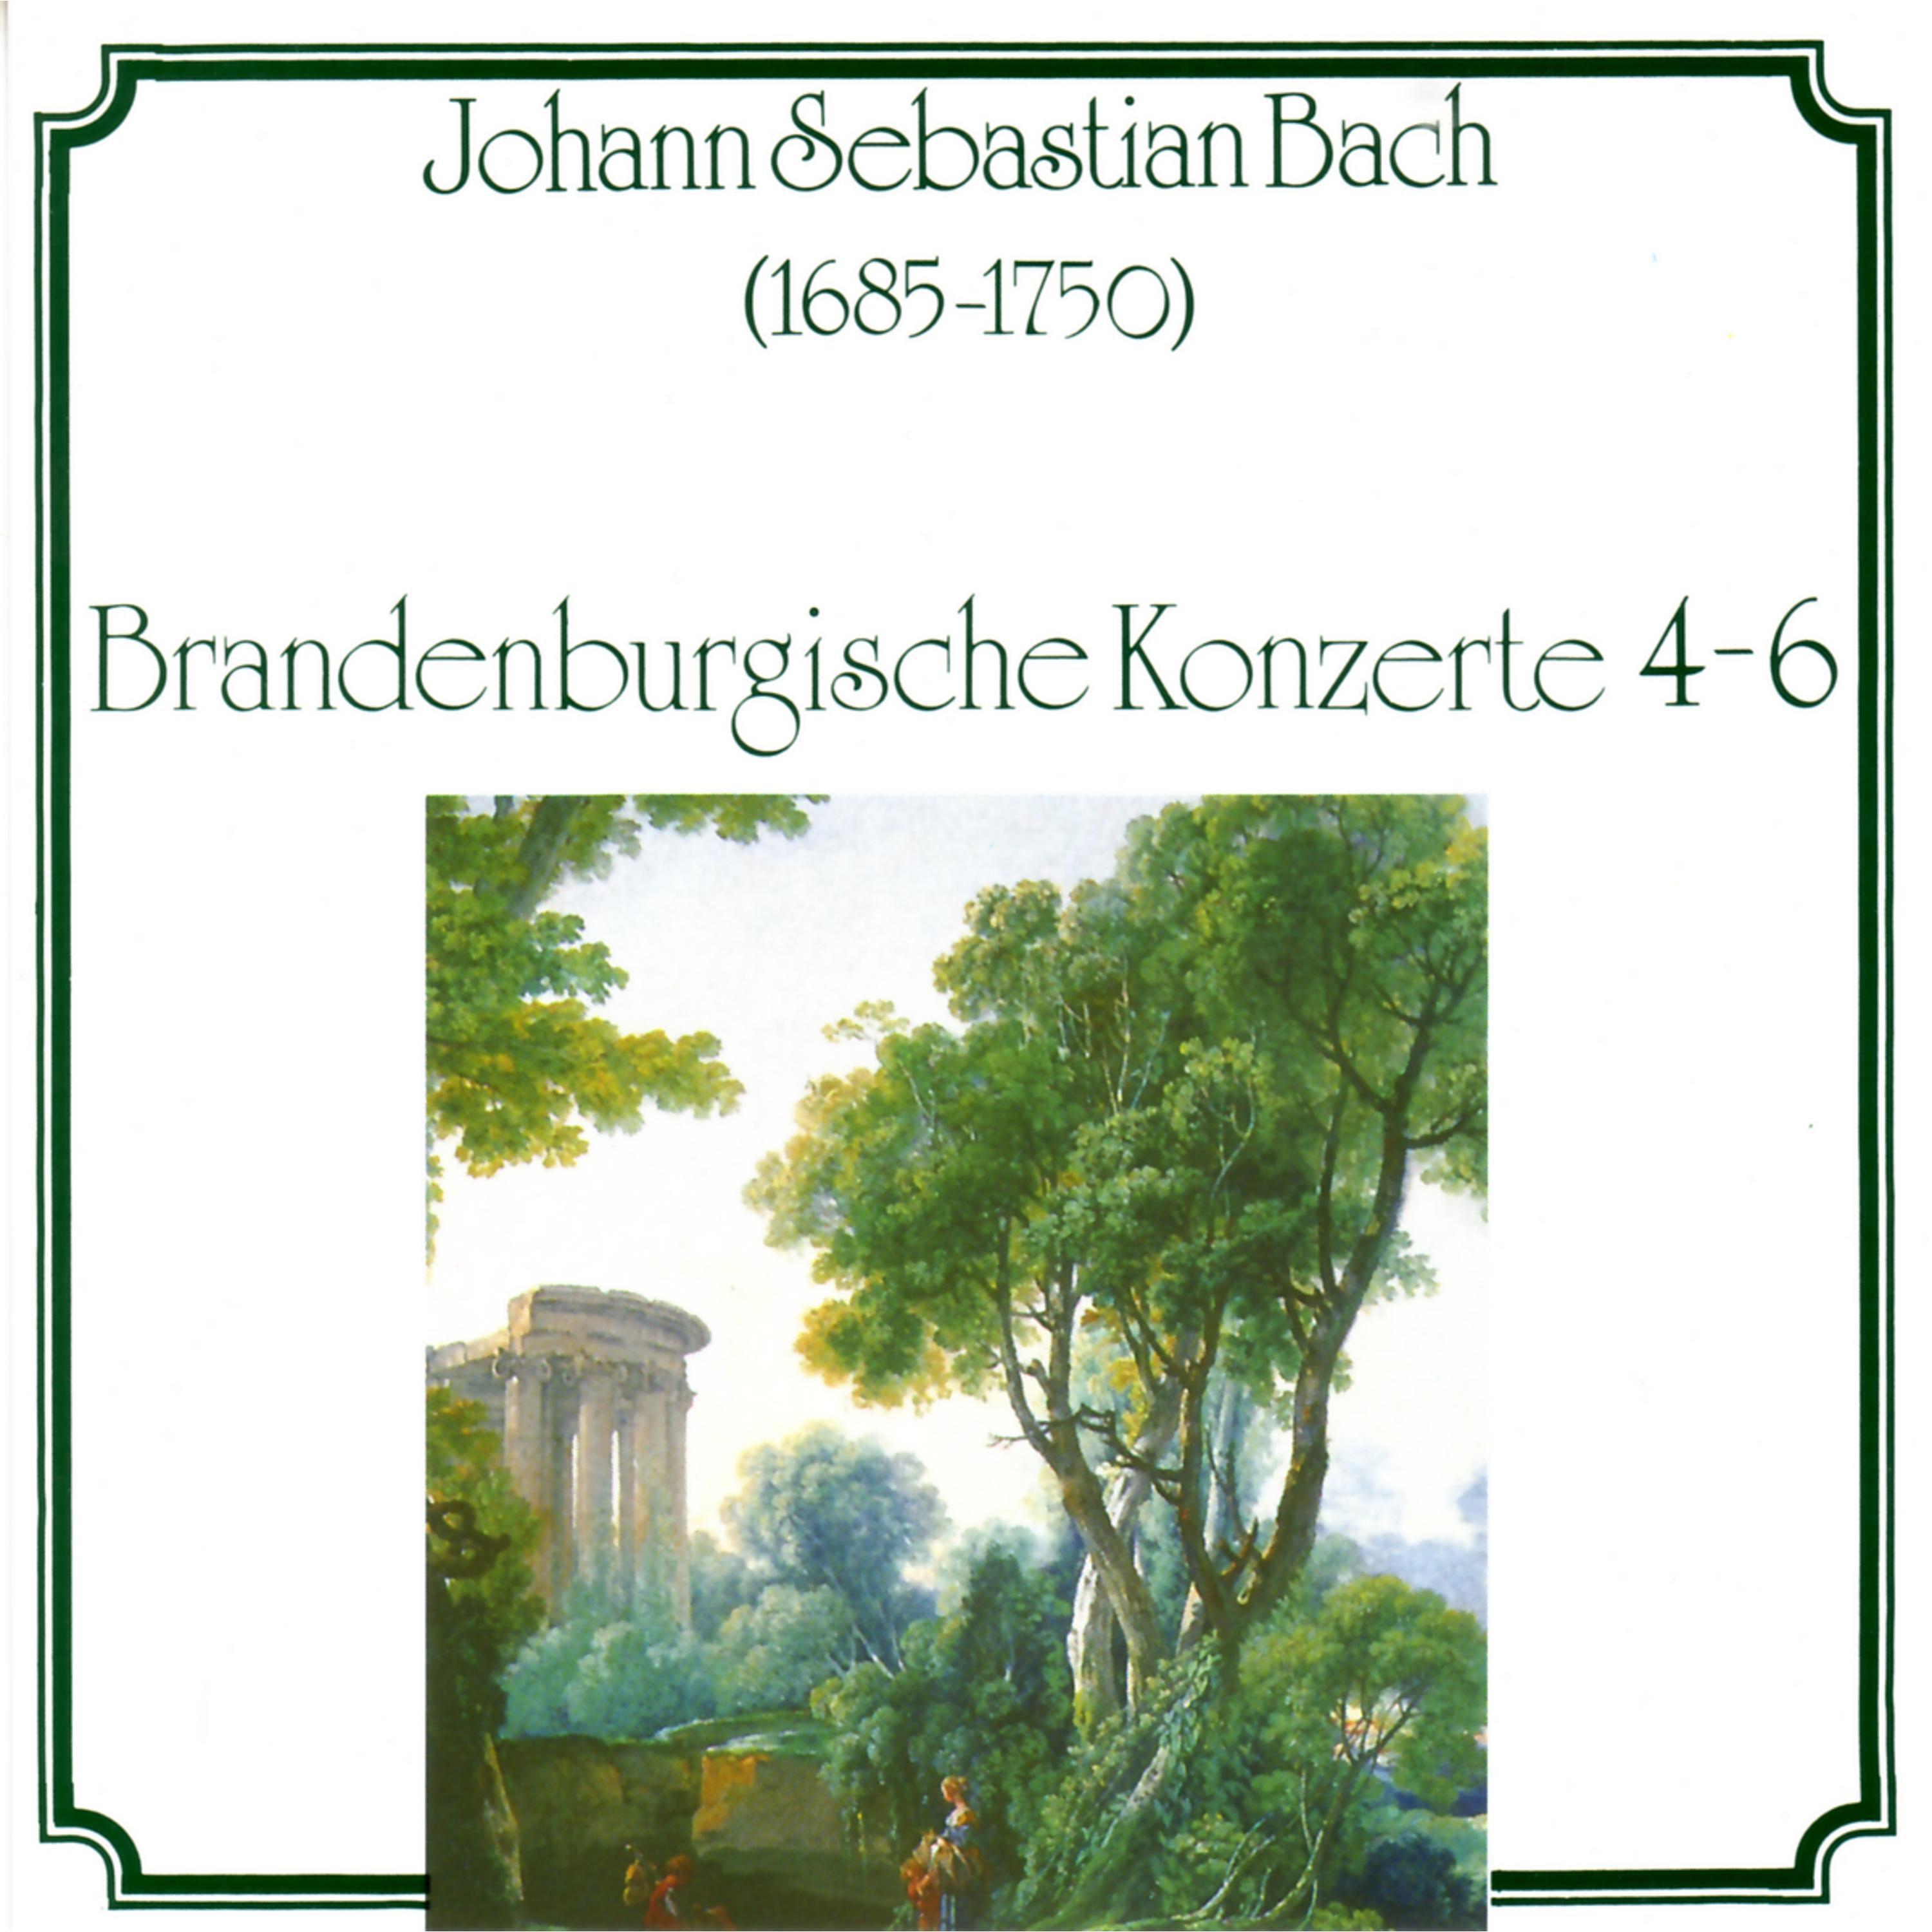 Baroque Studio Orchestra - Brandenburgisches Konzert No. 4 in G Major, BWV 1049: I. Allegro